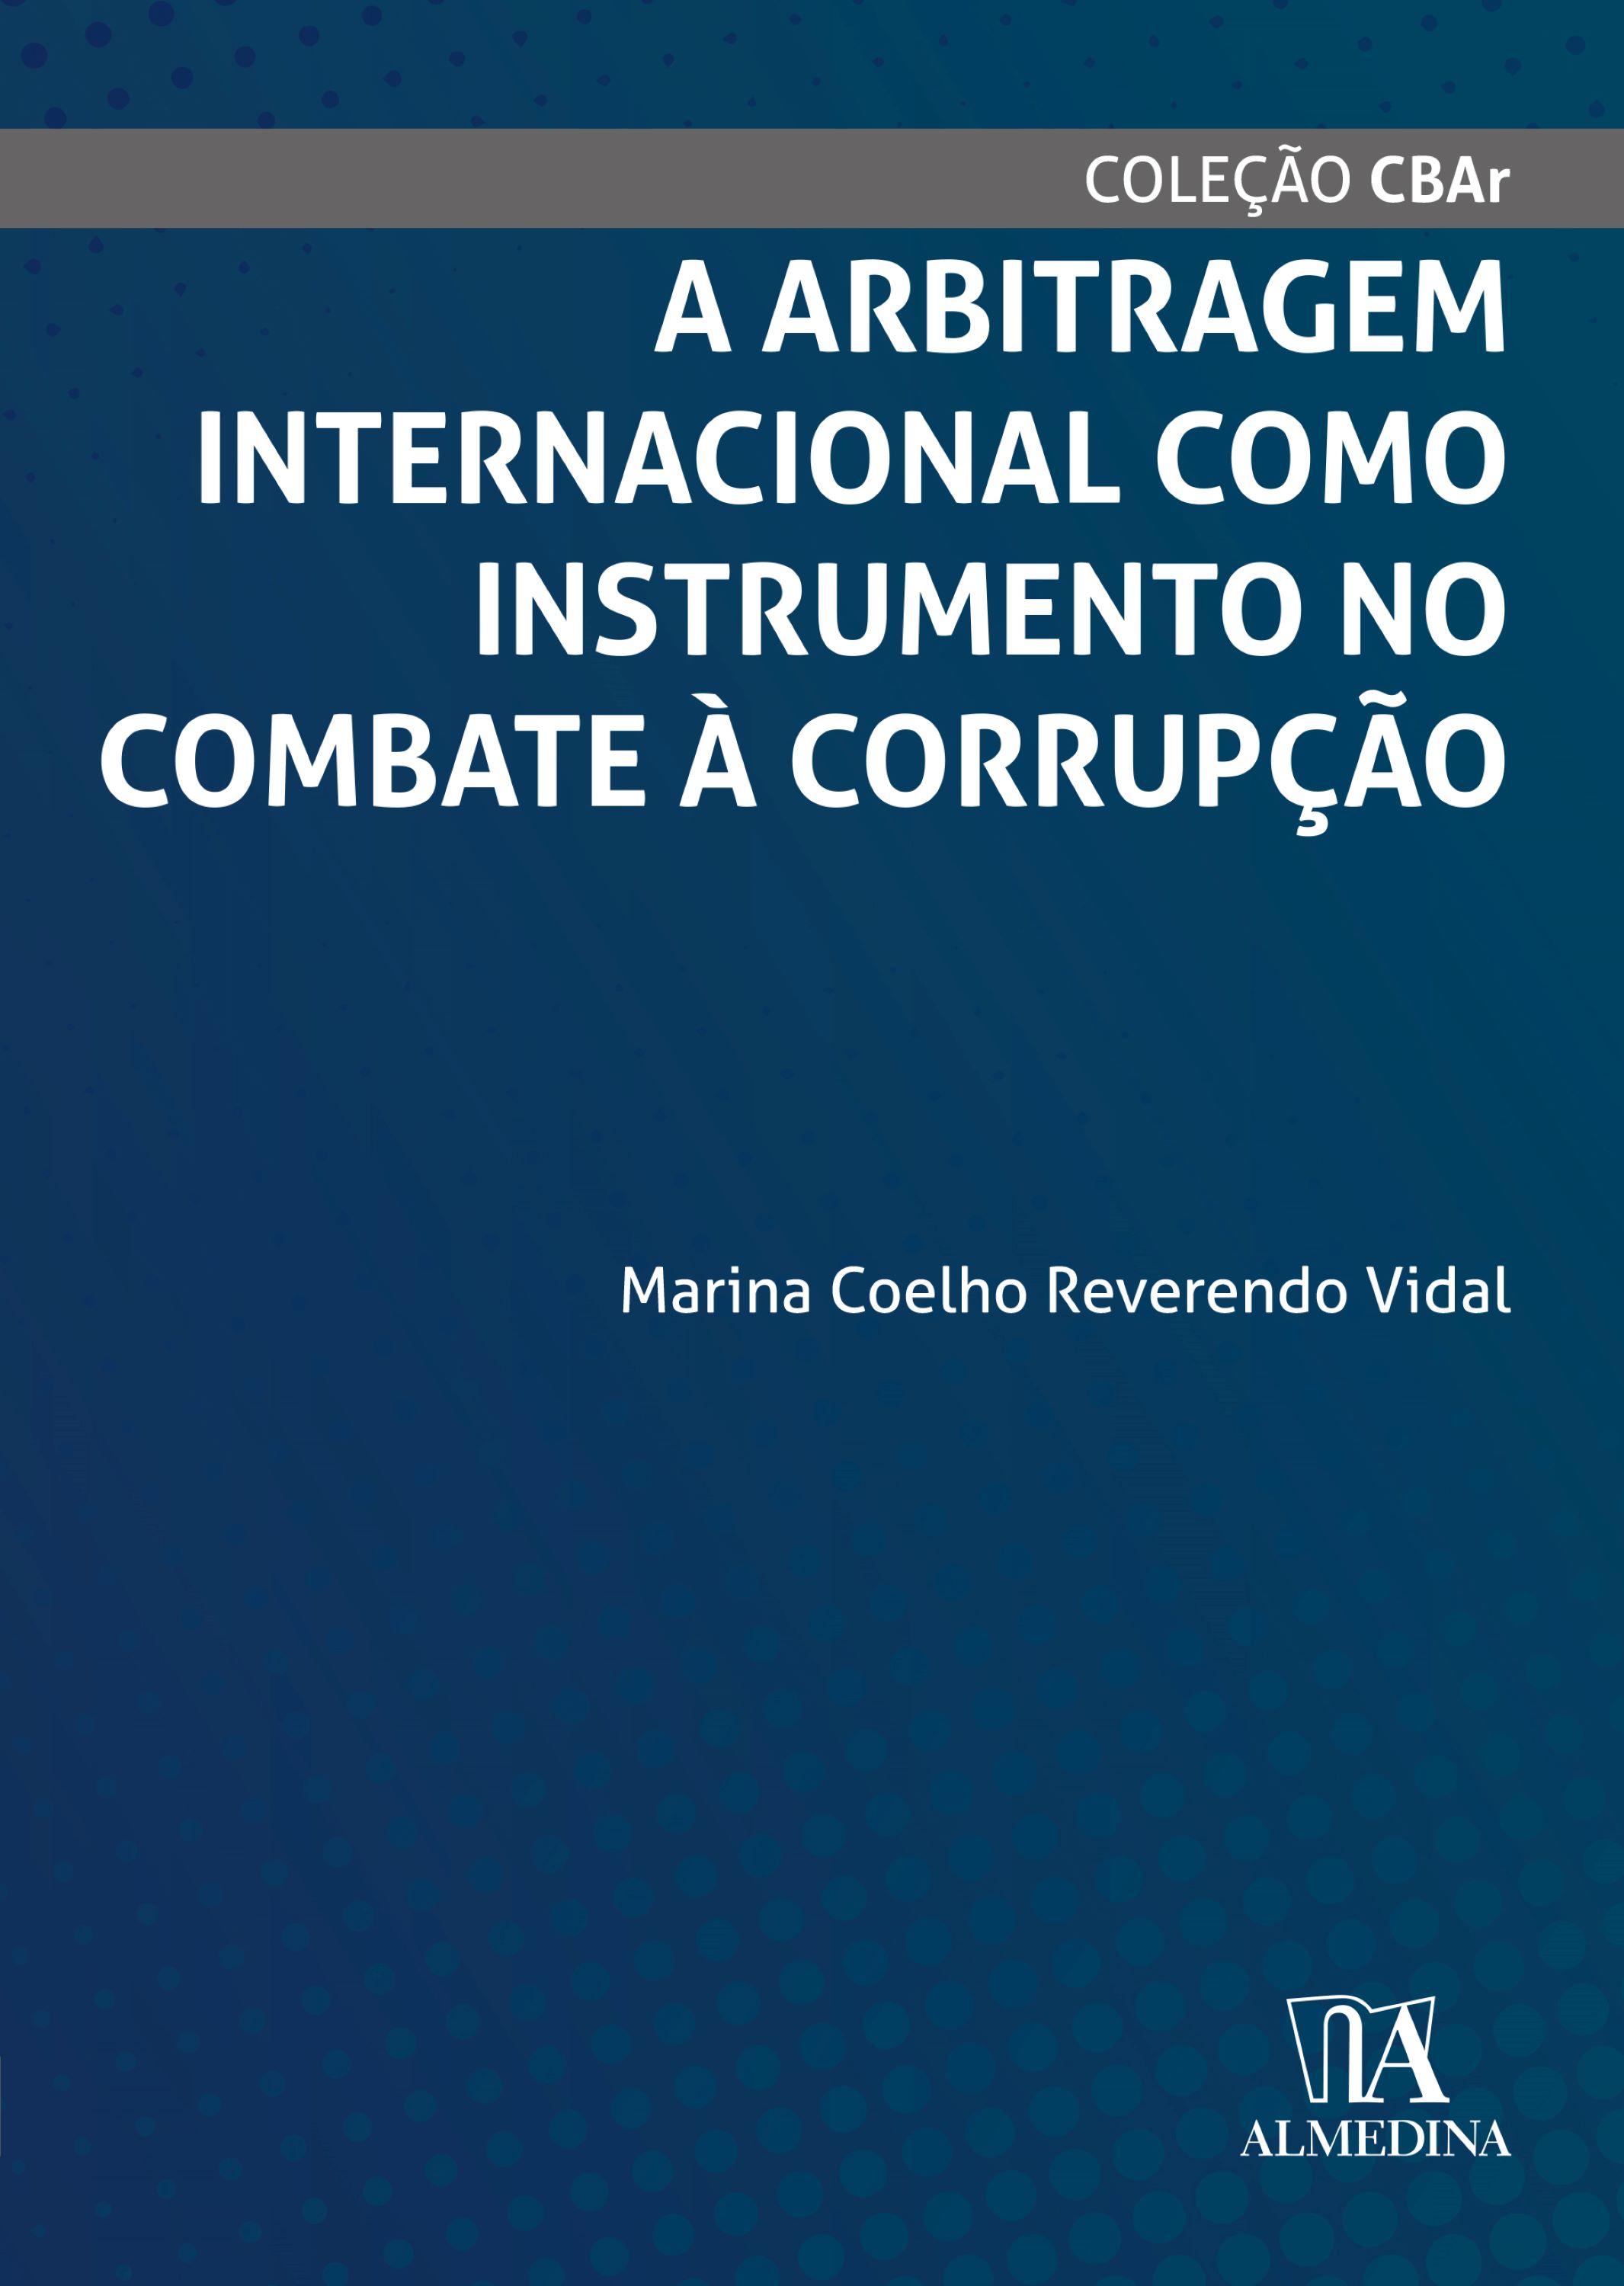 A Arbitragem Internacional como Instrumento no Combate à Corrupção